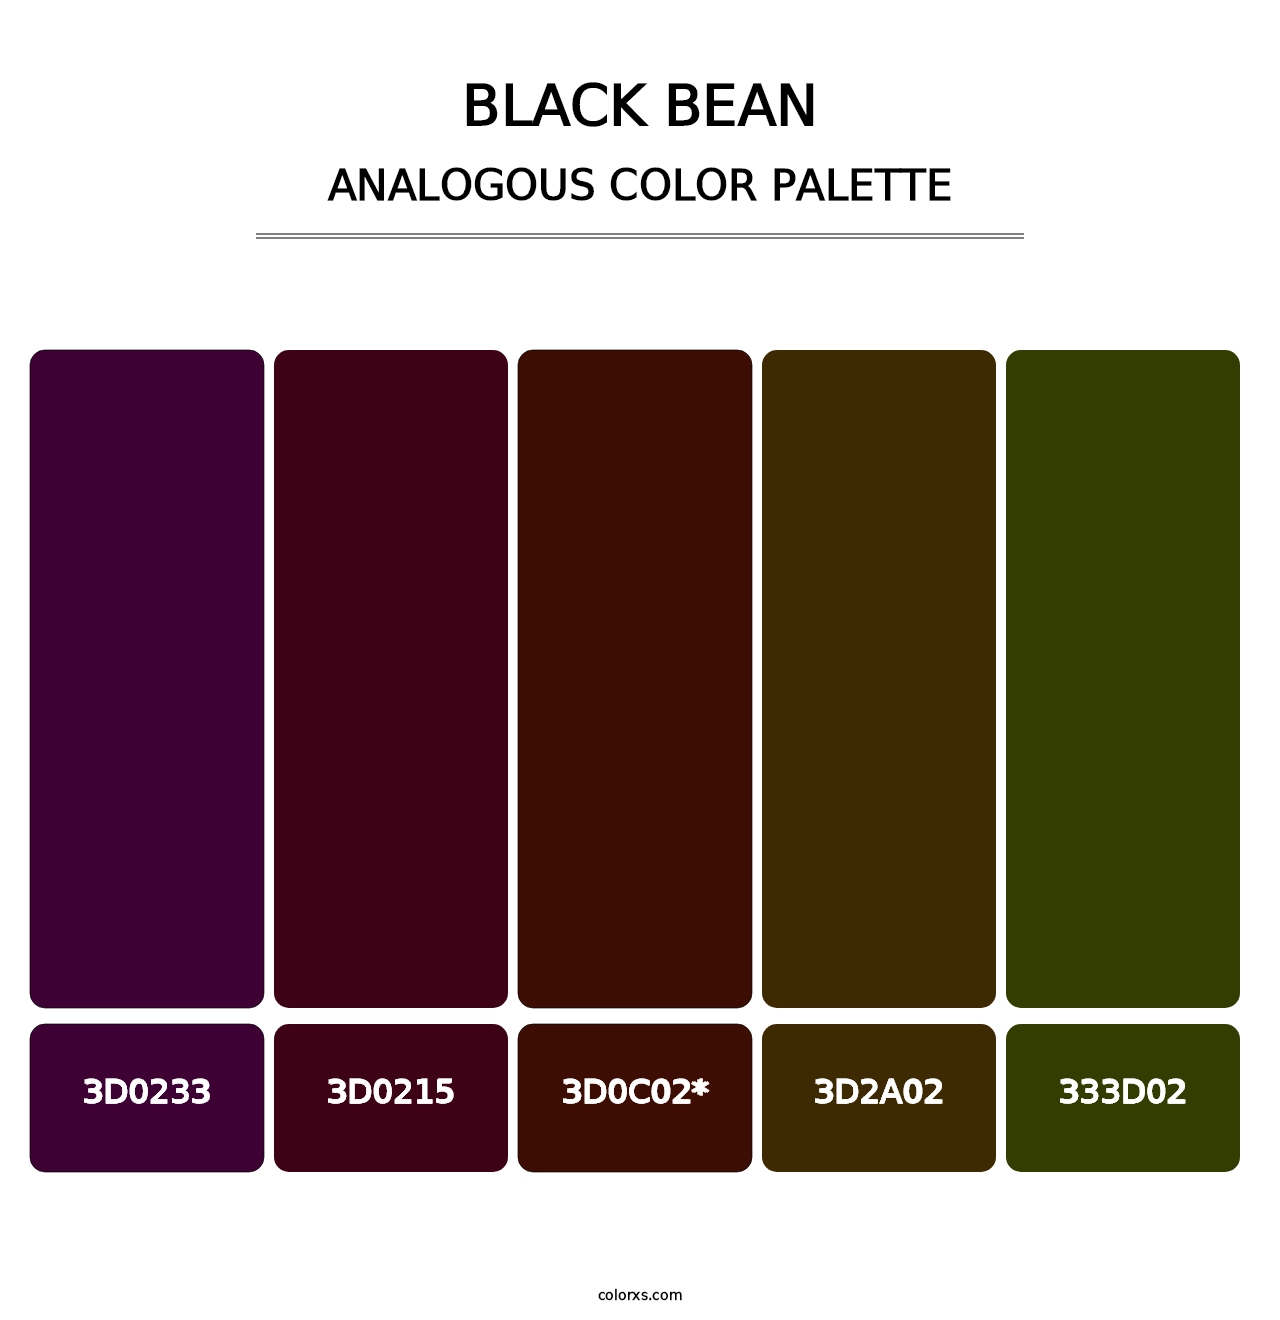 Black Bean - Analogous Color Palette